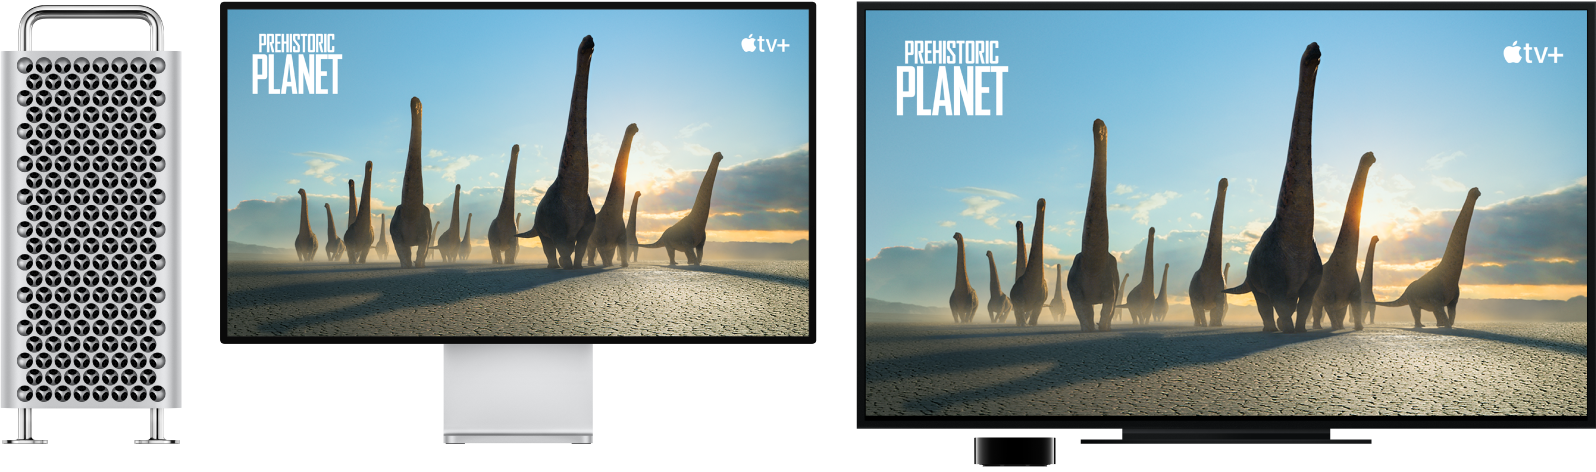 Mac Pro, jonka sisältö on peilattu suurelle HDTV:lle Apple TV:n avulla.